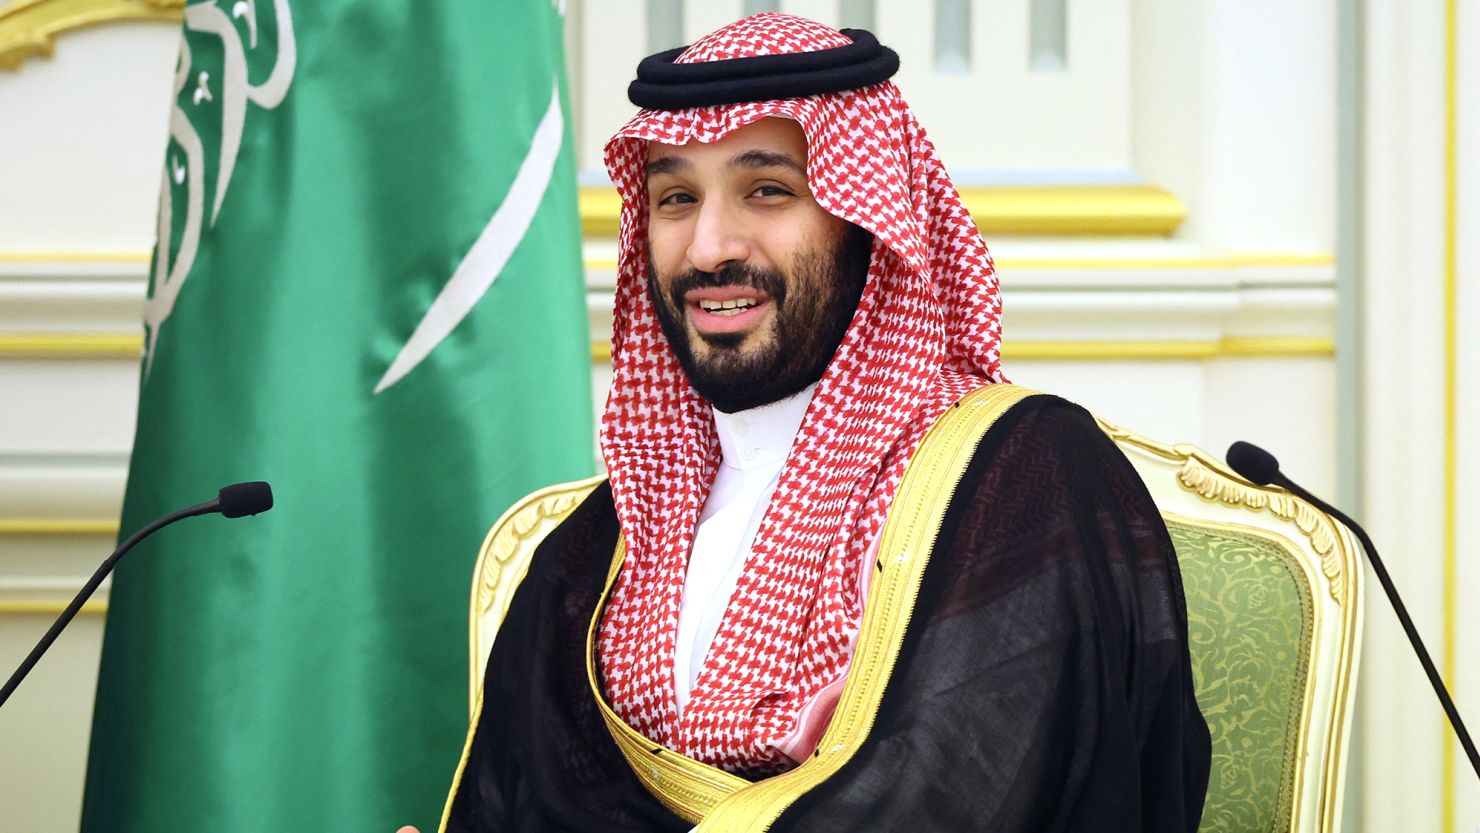 Saudi Arabia may be open to befriending Israel.